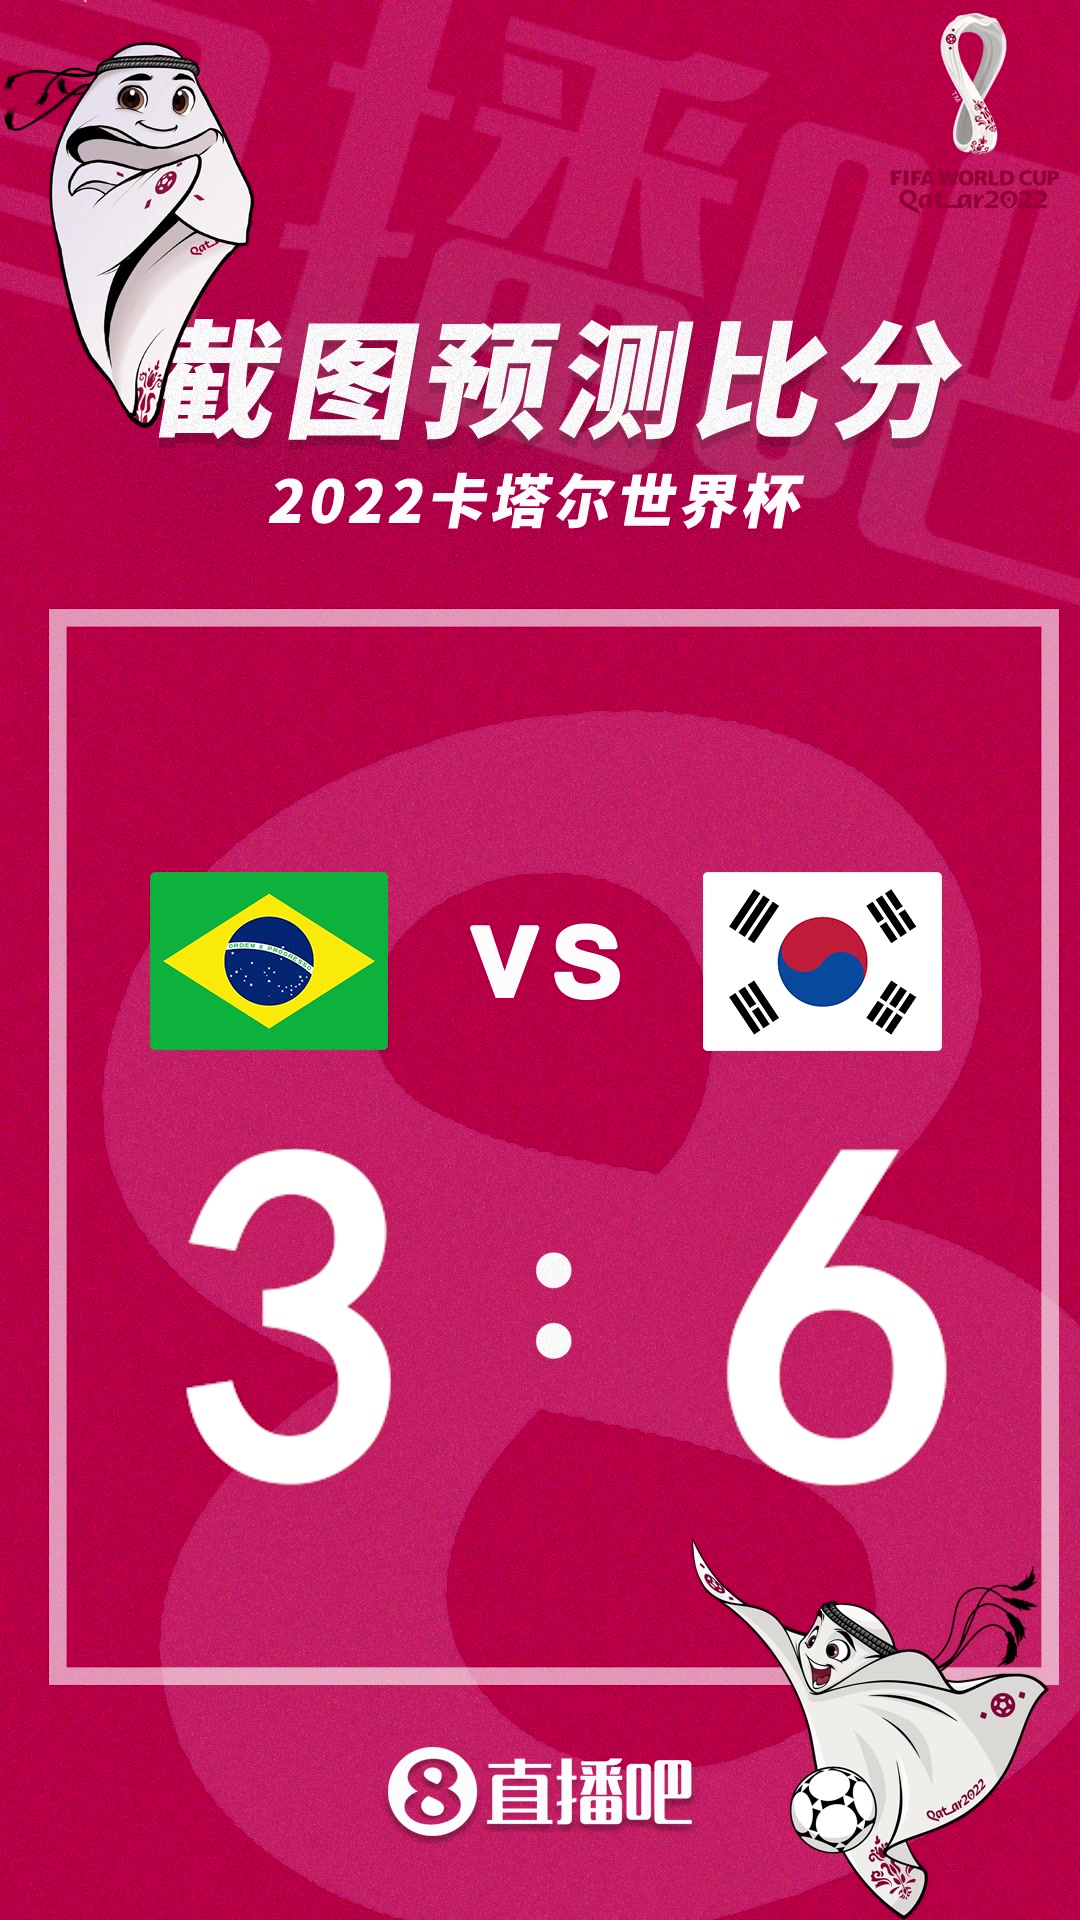 谁能胜出？截图预测巴西vs韩国比分